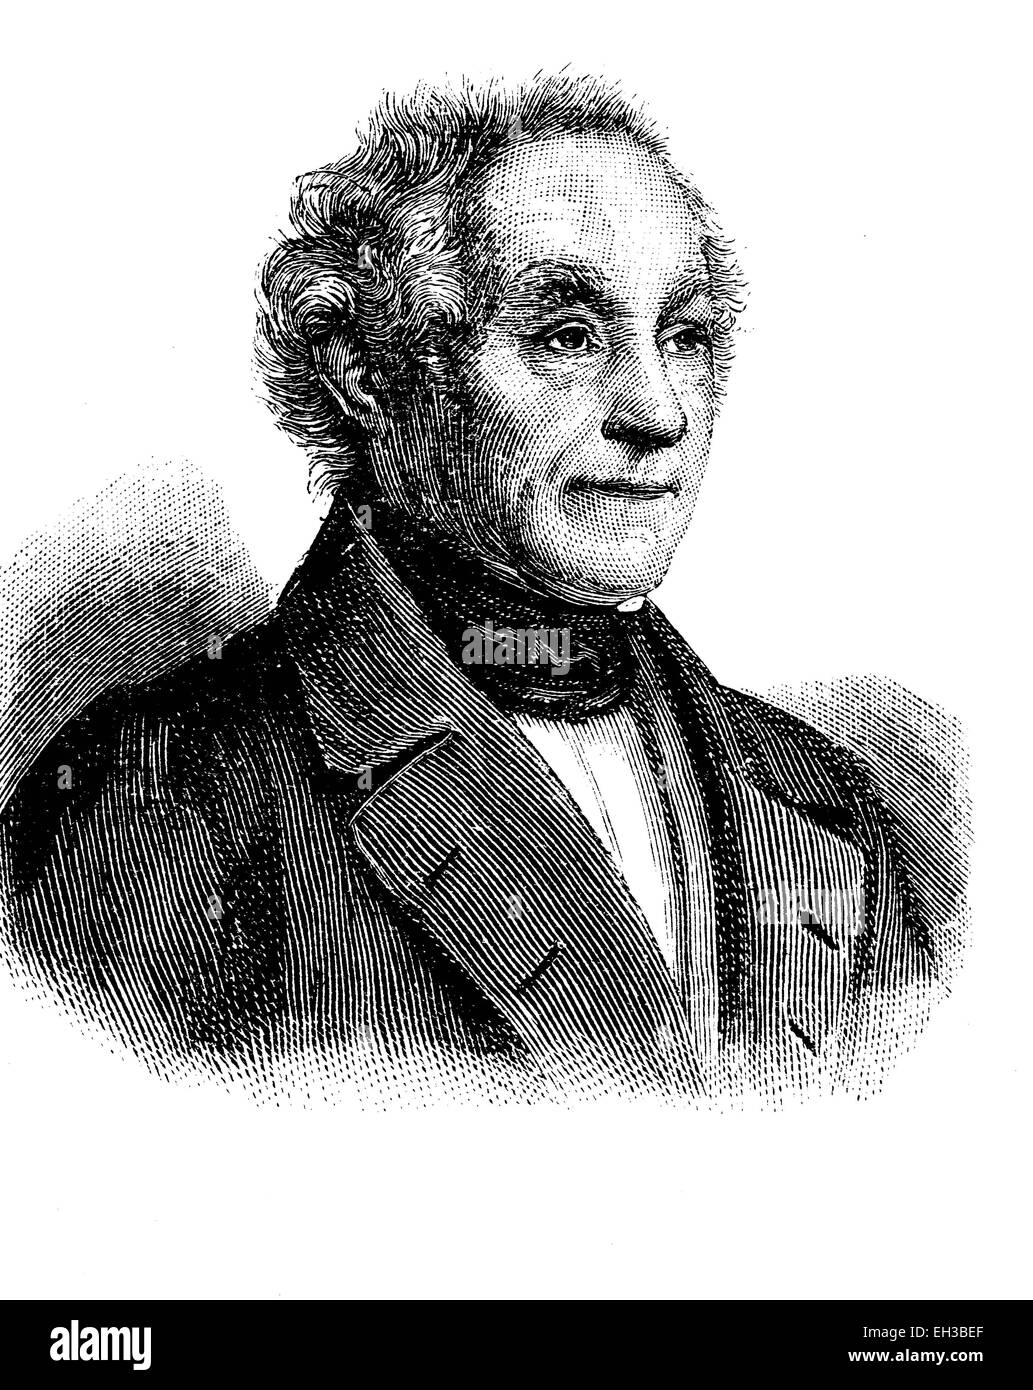 Johann Adam von Itzstein, 1775 - 1855, homme politique libéral, gravure sur bois, vers 1880 Banque D'Images